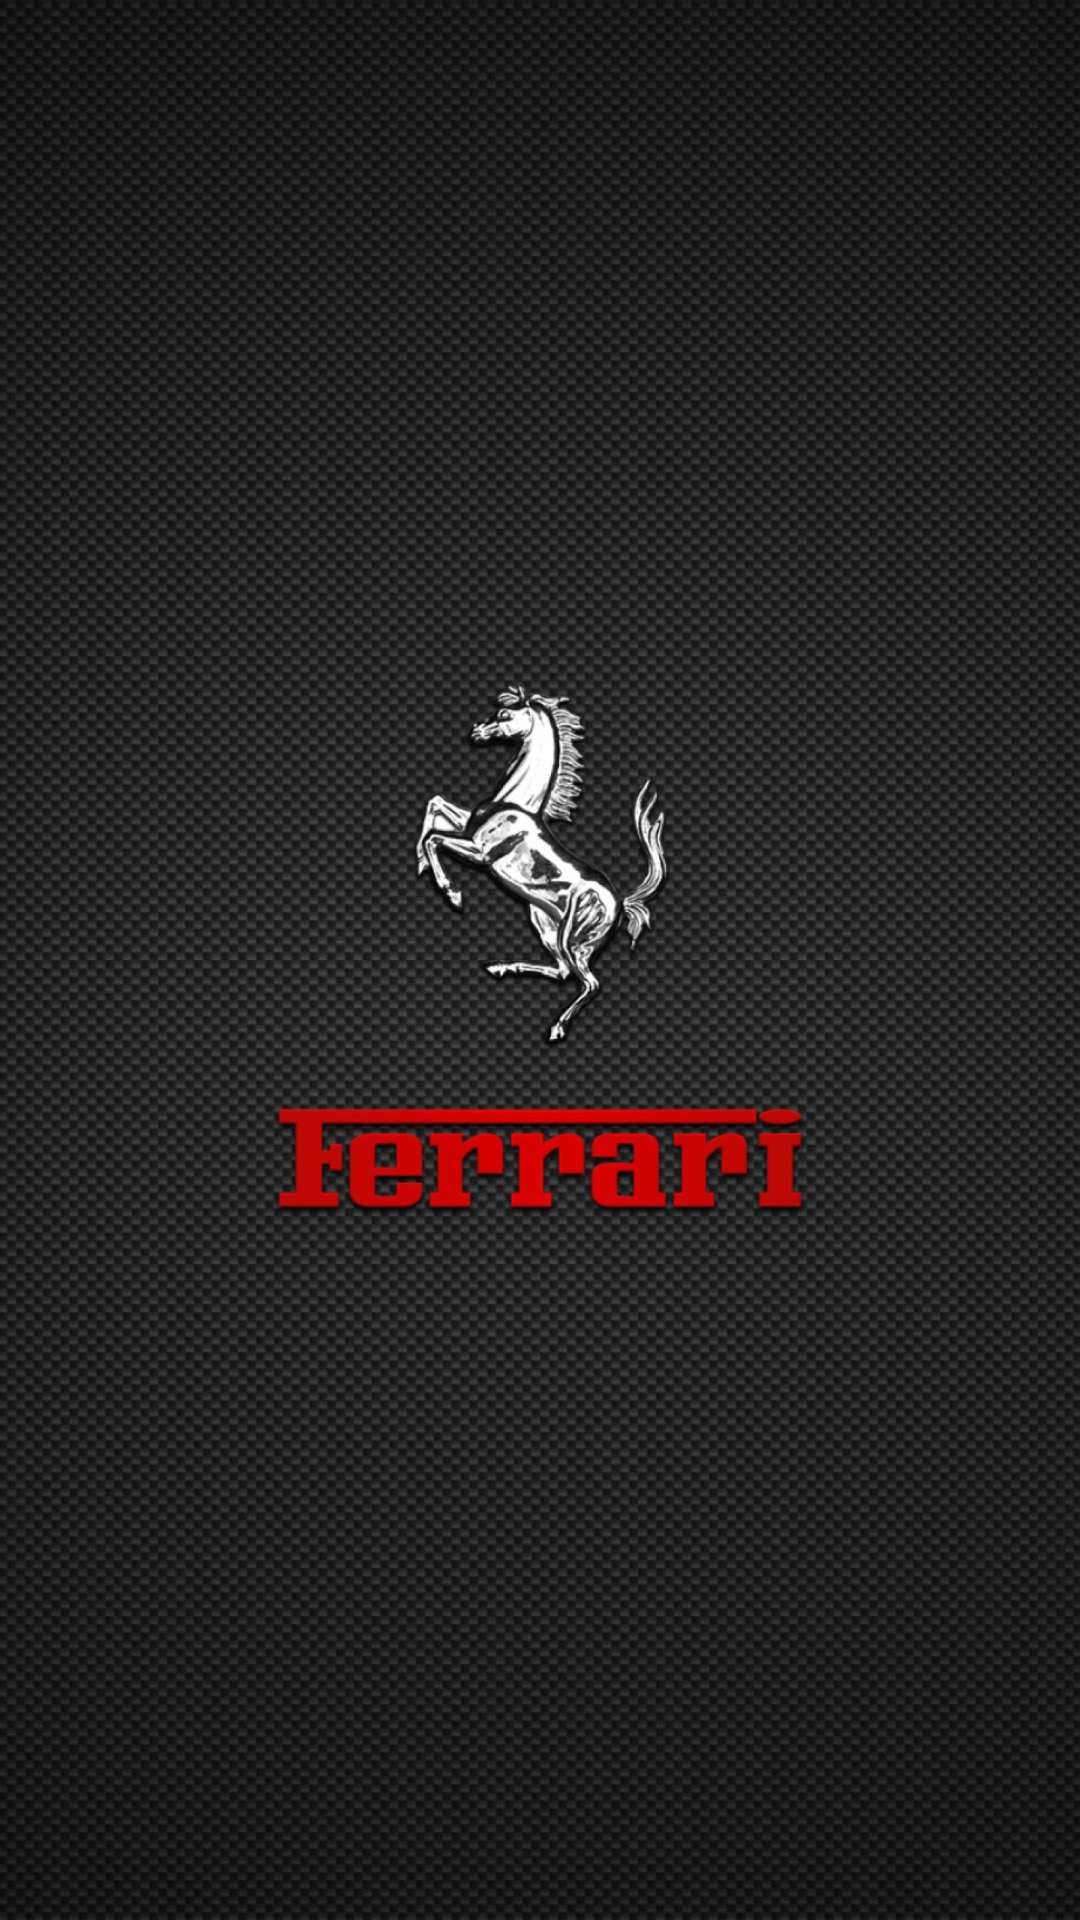 Обои Ferrari Logo 1080x1920